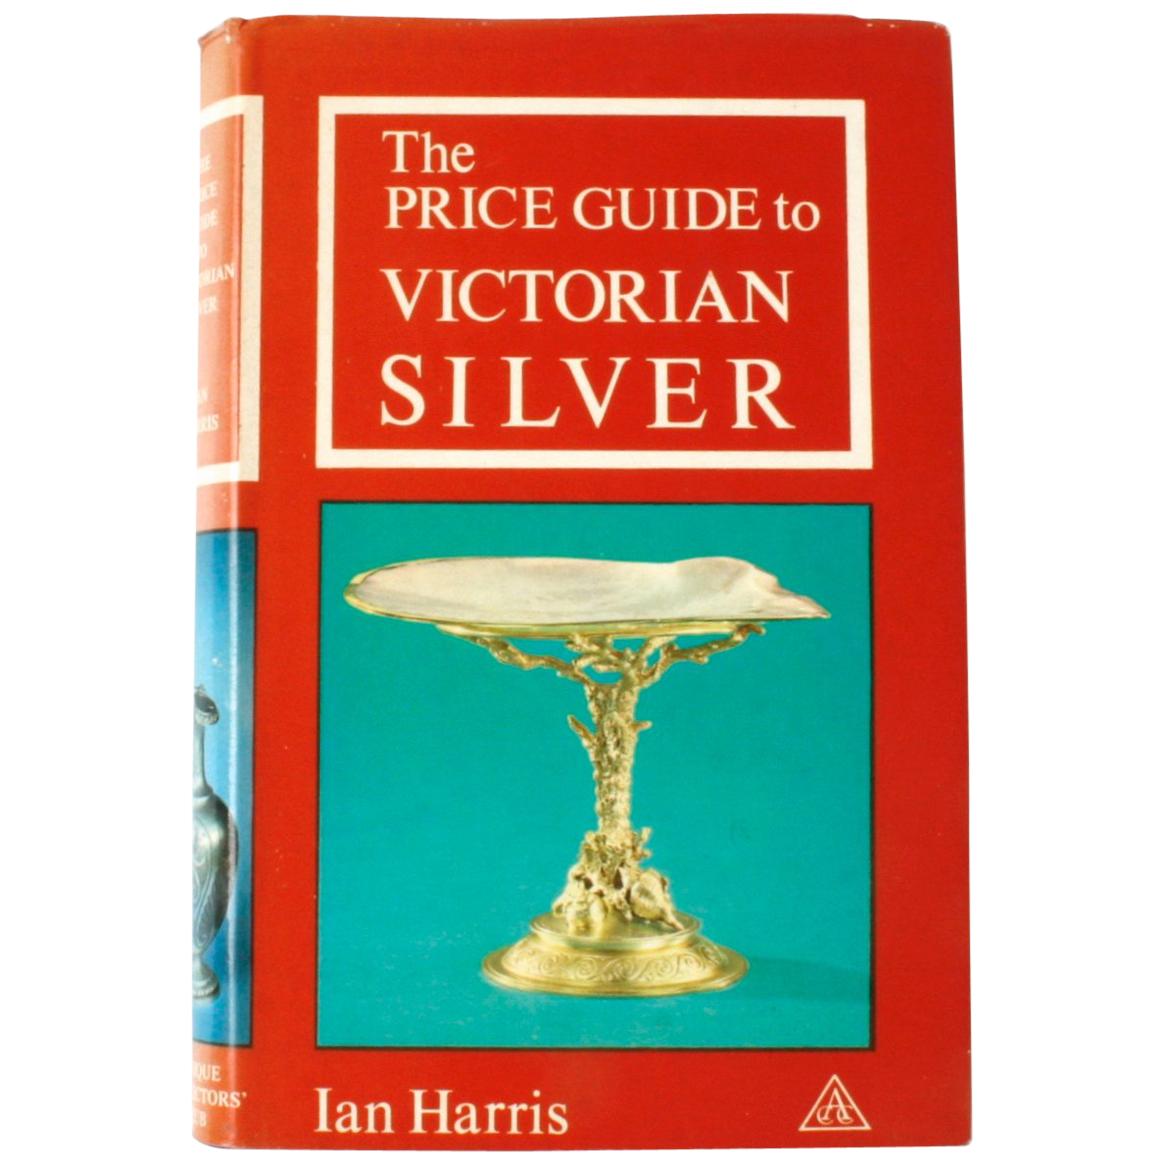 Preisvorschlag für viktorianisches Silber von Ian Harris, 1st Ed